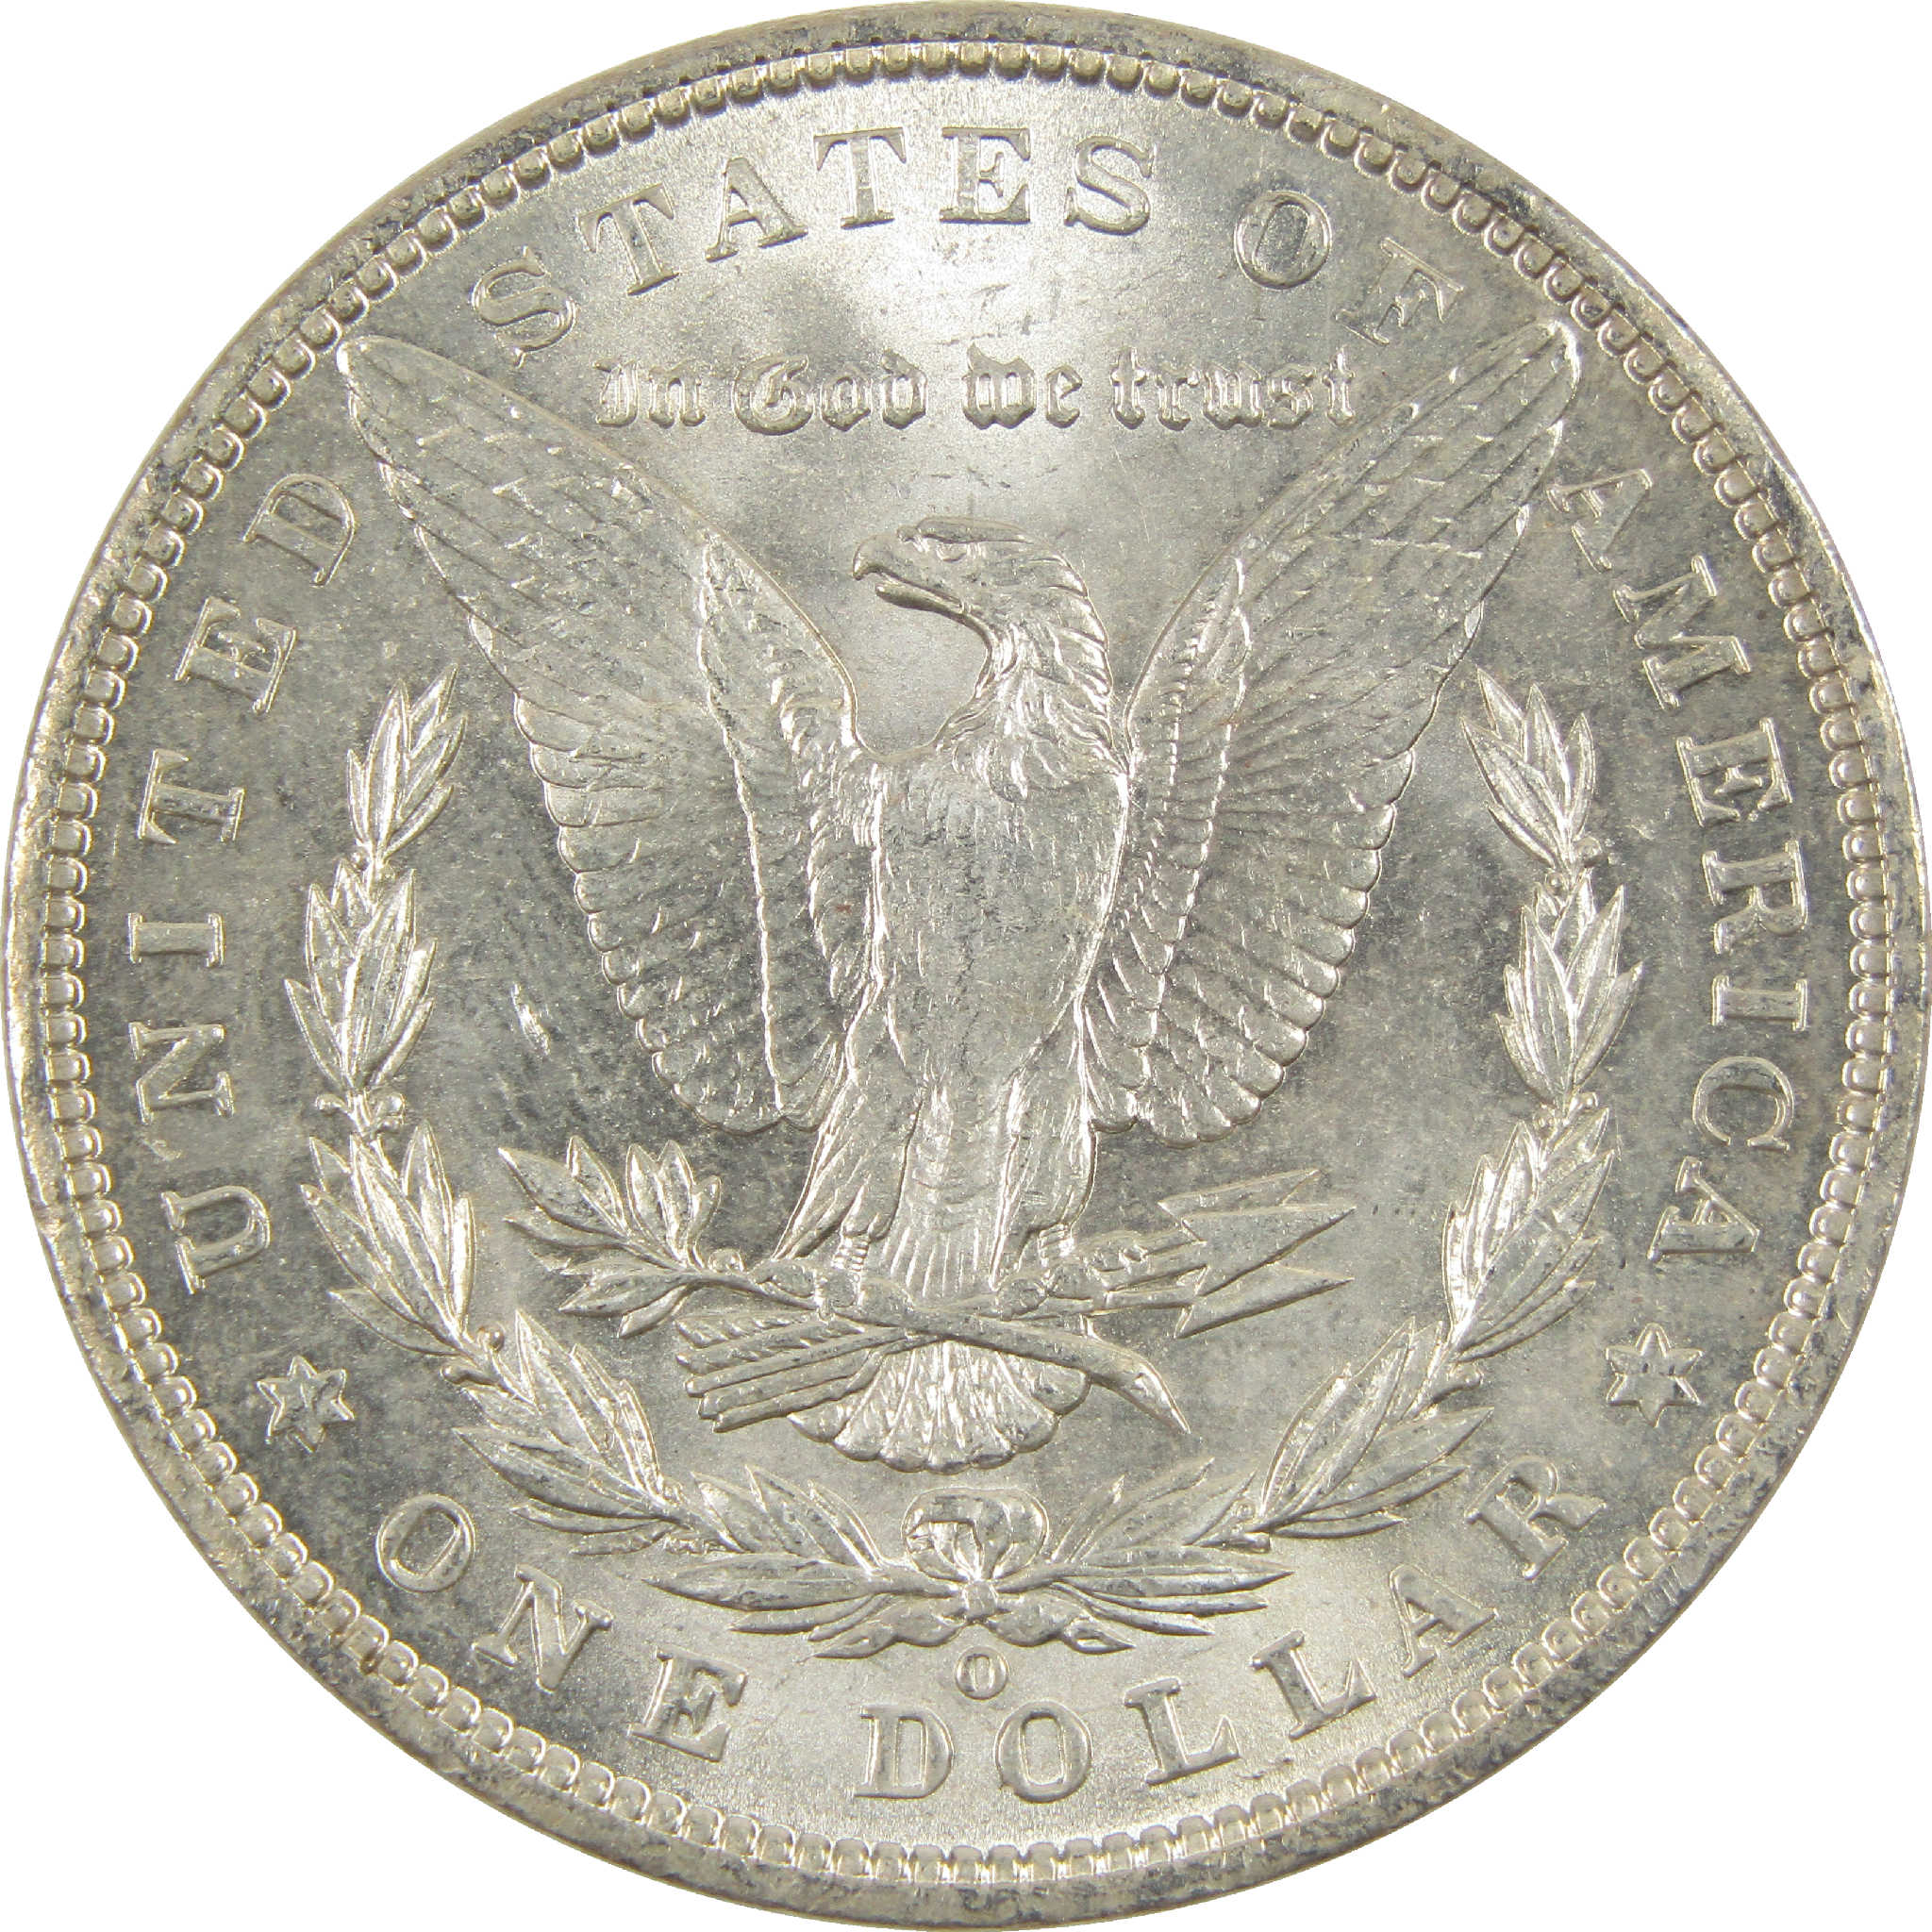 1901 O Morgan Dollar CH AU Choice About Uncirculated Silver $1 Coin - Morgan coin - Morgan silver dollar - Morgan silver dollar for sale - Profile Coins &amp; Collectibles